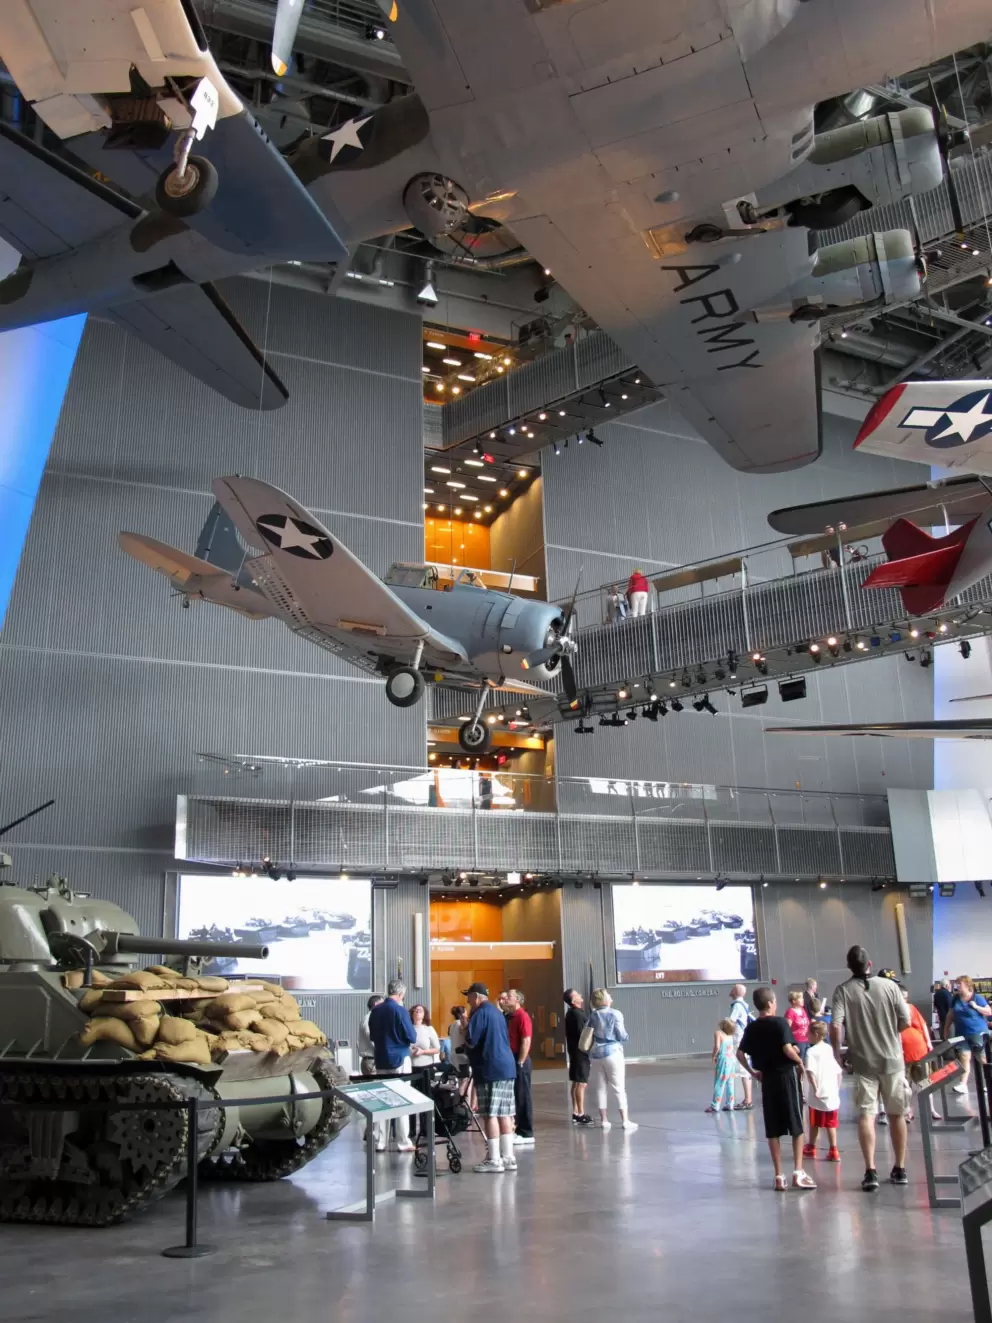 National World War II Museum